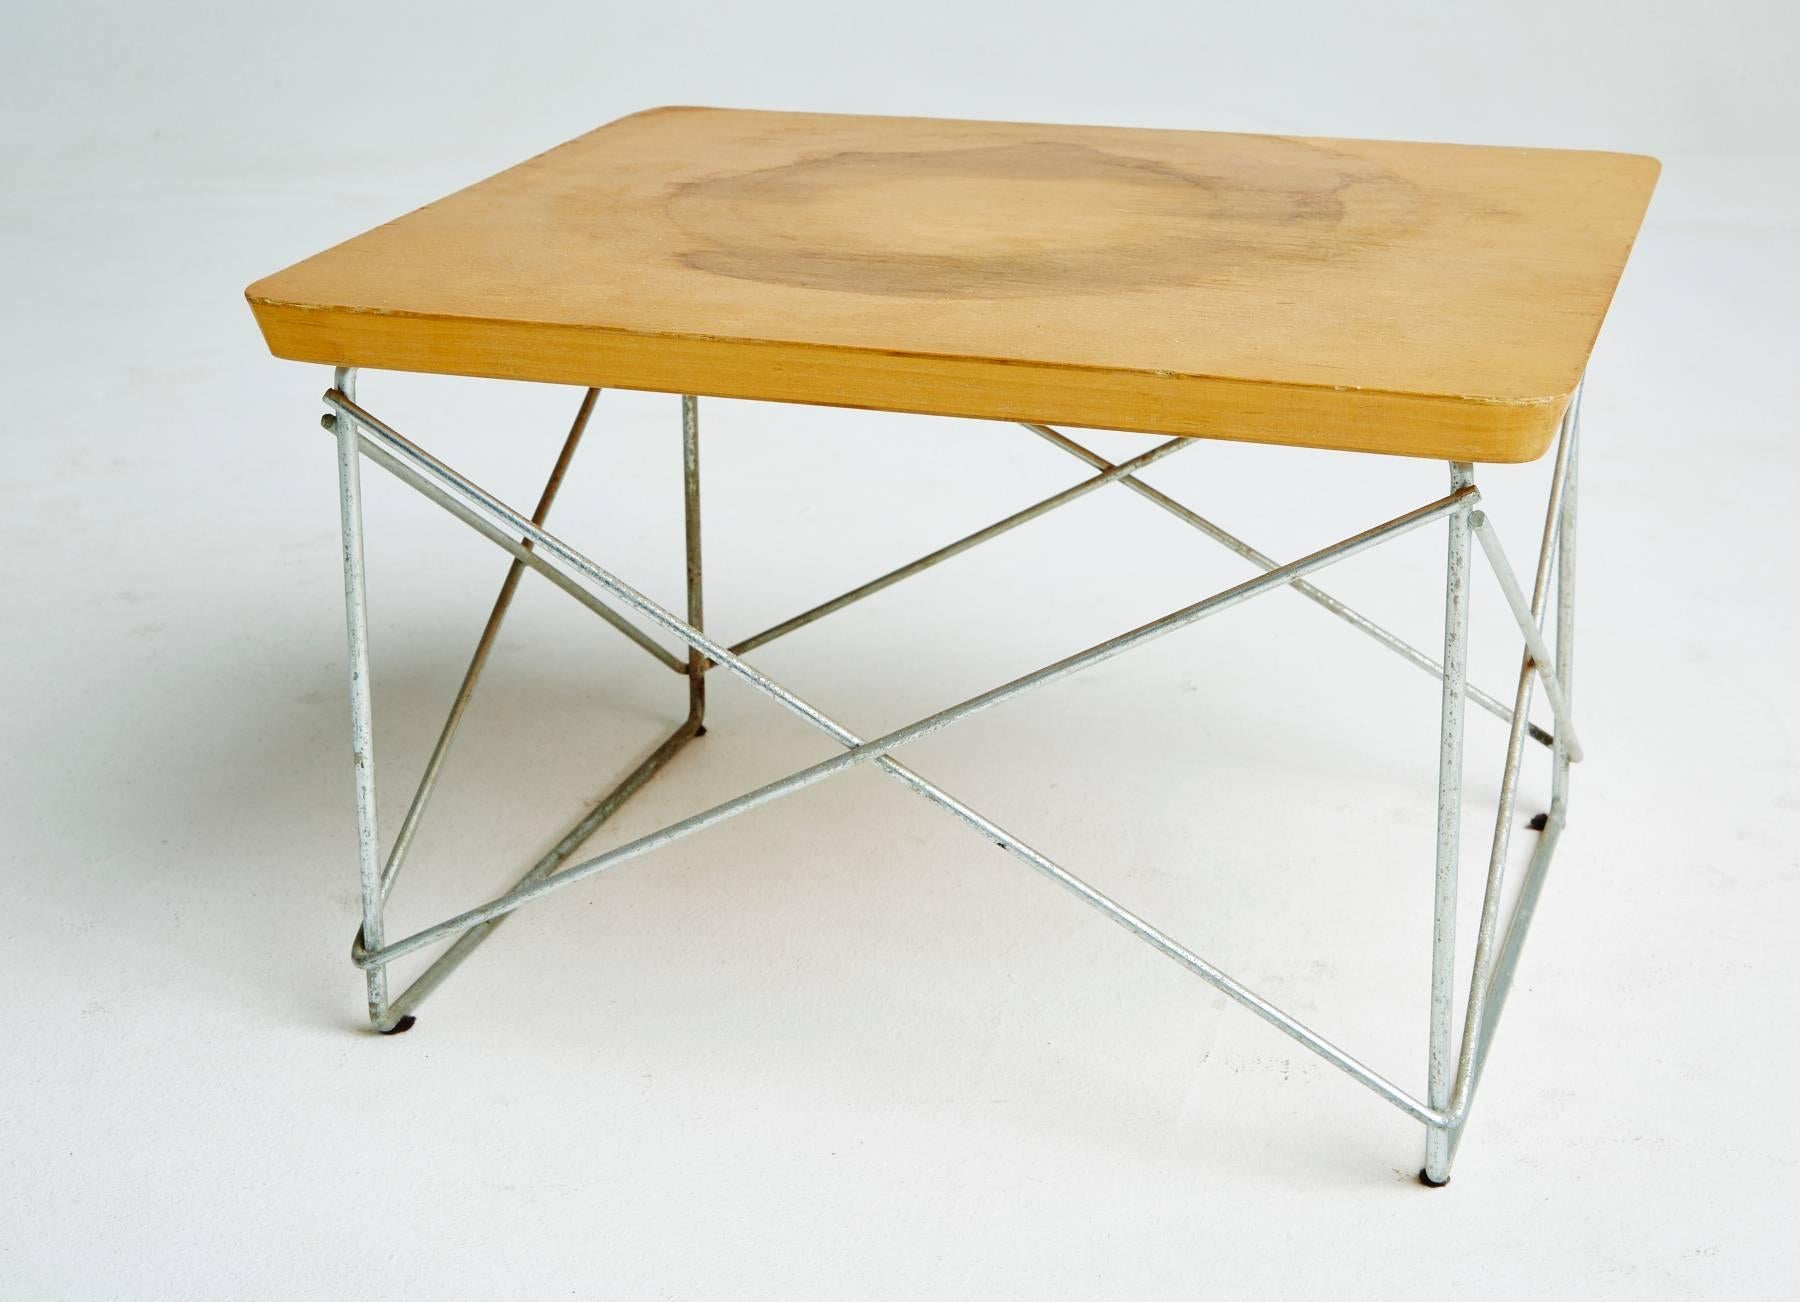 LTR-Tische aus Birke von Eames für Herman Miller, frühe Produktion, signiert, 1950er Jahre (amerikanisch)